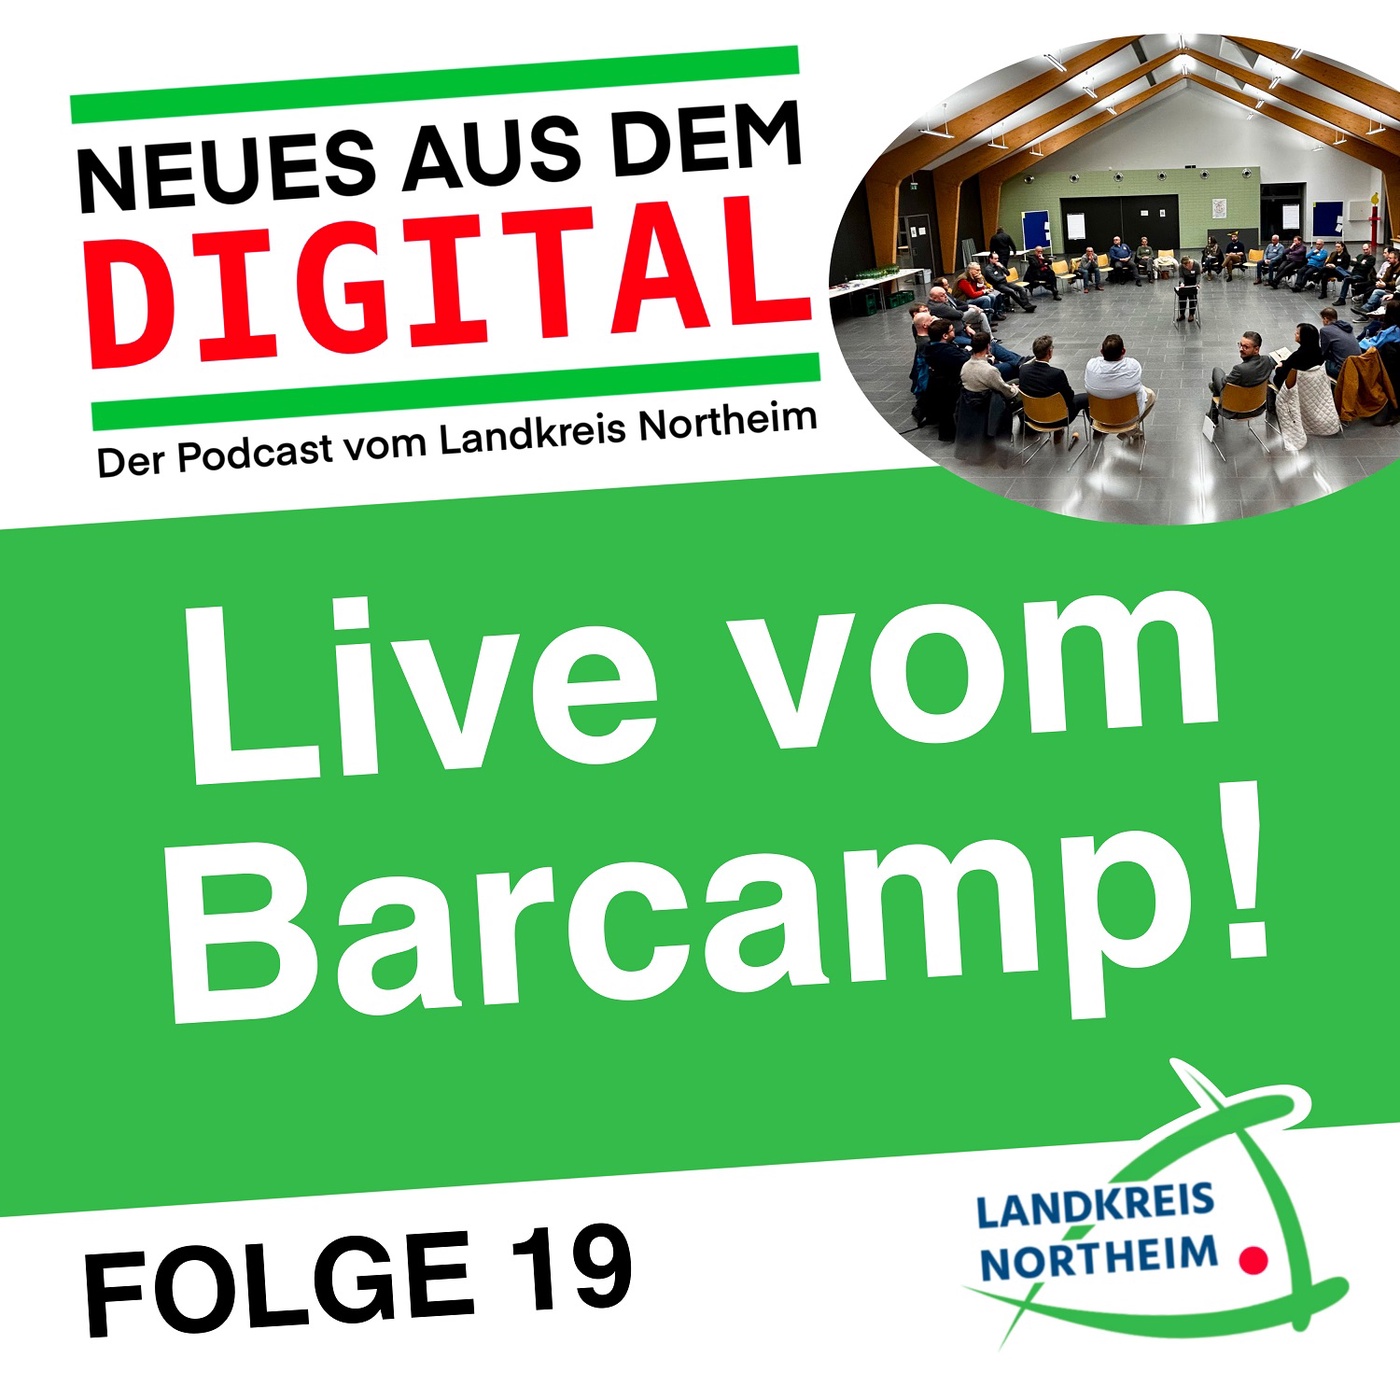 Folge 19 - Live vom Barcamp!